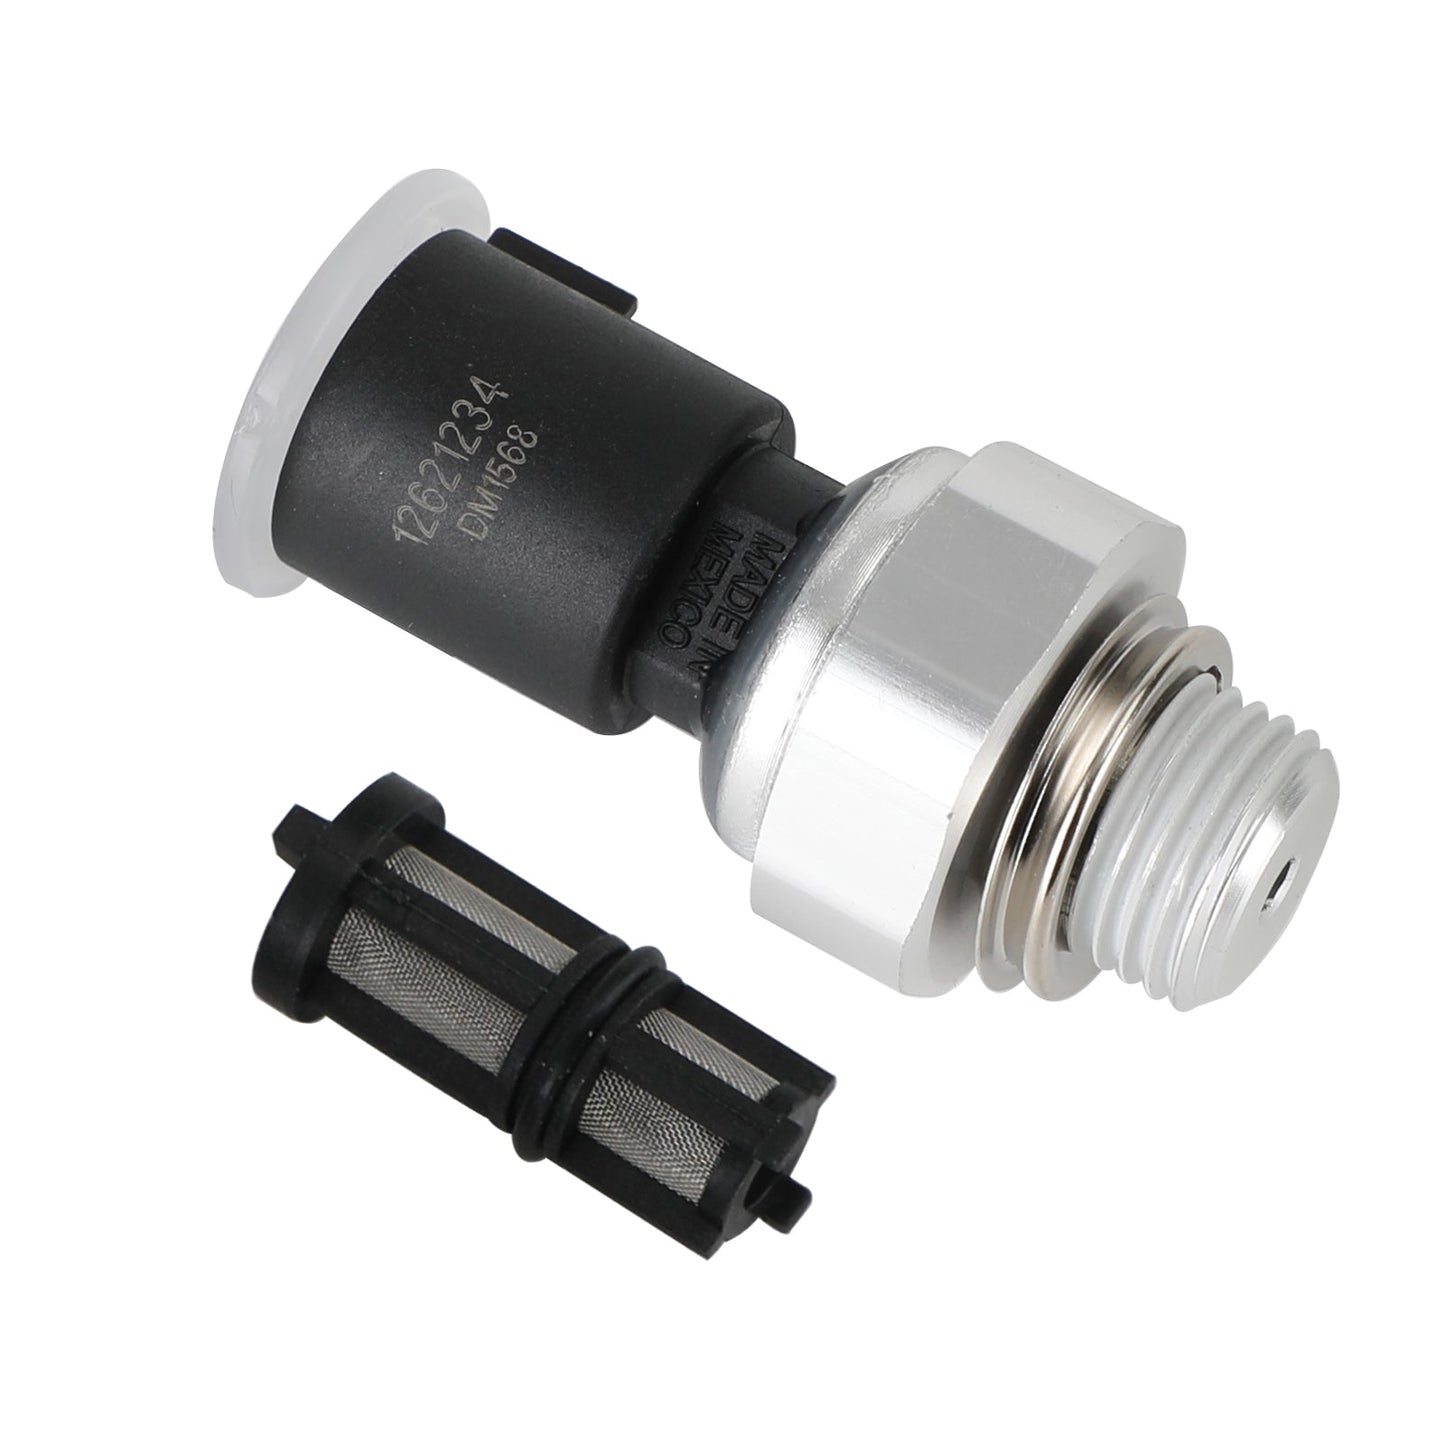 Oil Pressure Sensor 12673134 For Chevrolet Silverado 09-17 With Filter 917-143